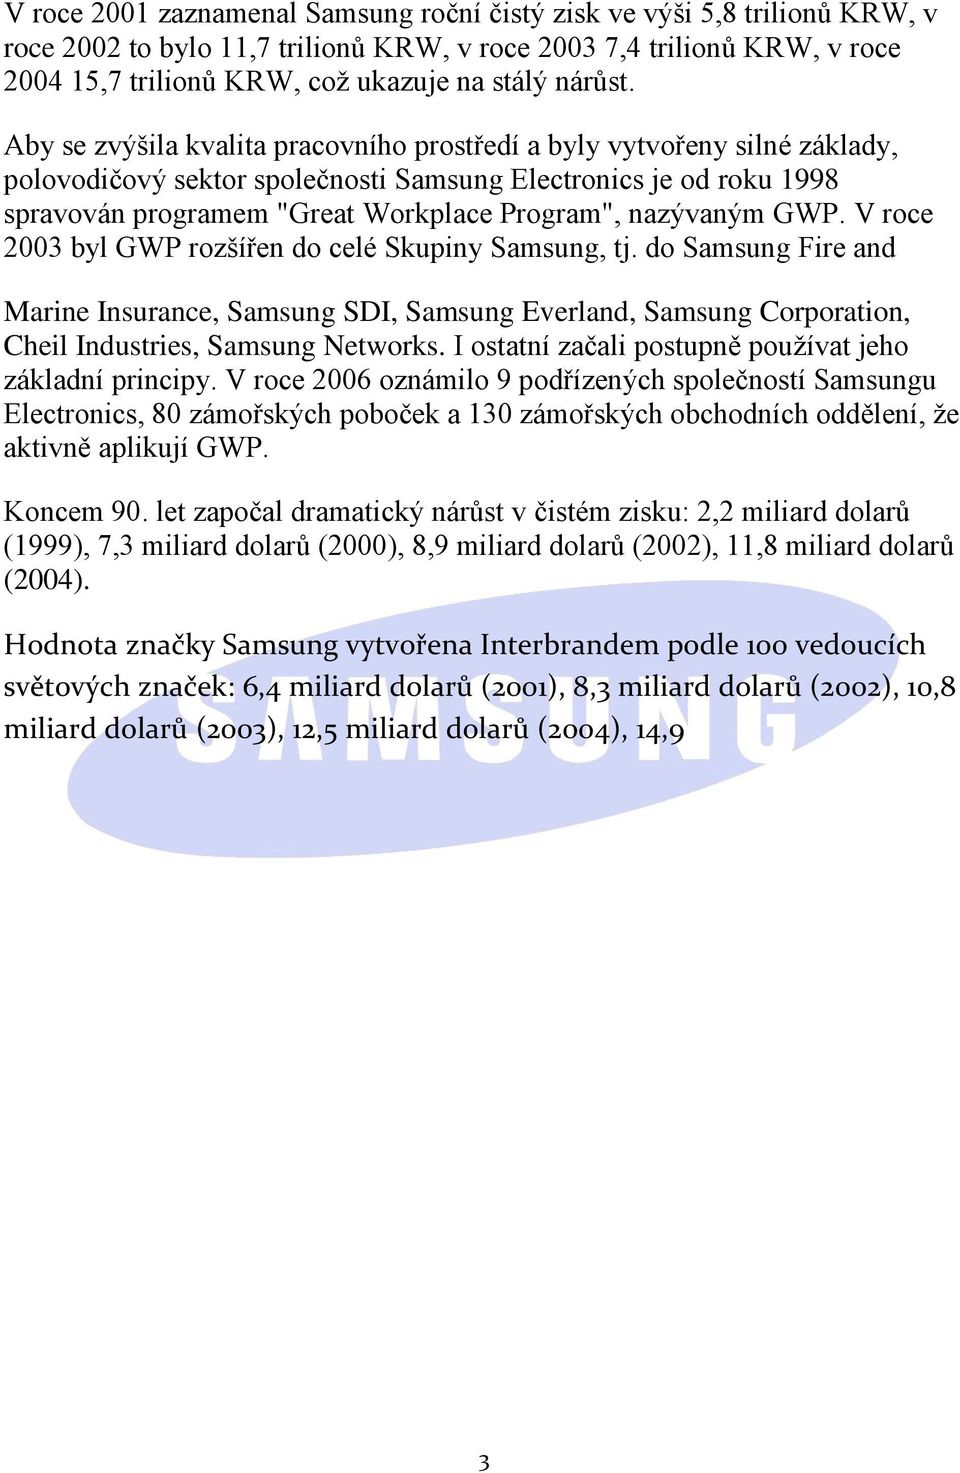 Aby se zvýšila kvalita pracovního prostředí a byly vytvořeny silné základy, polovodičový sektor společnosti Samsung Electronics je od roku 1998 spravován programem "Great Workplace Program",